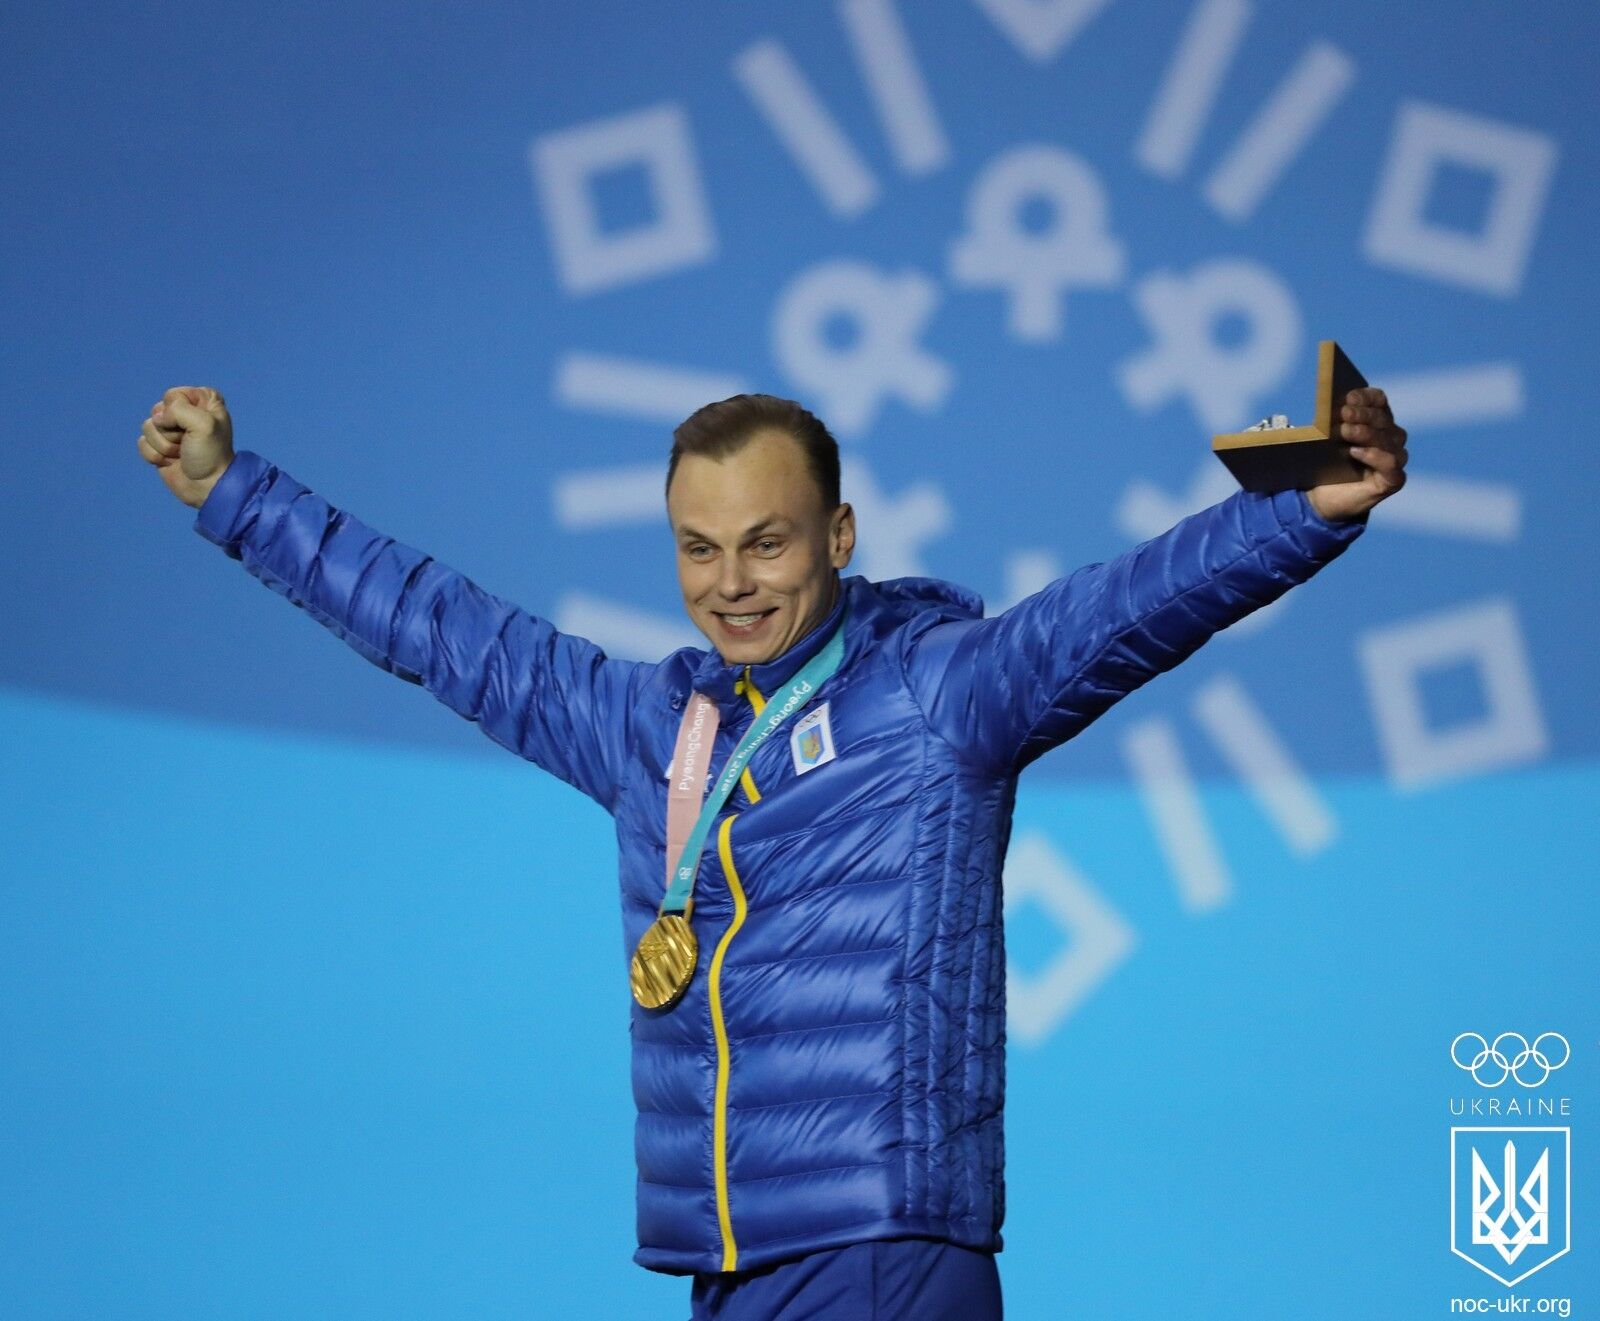 До сліз! З'явилися фото і відео нагородження українського чемпіона Олімпіади-2018